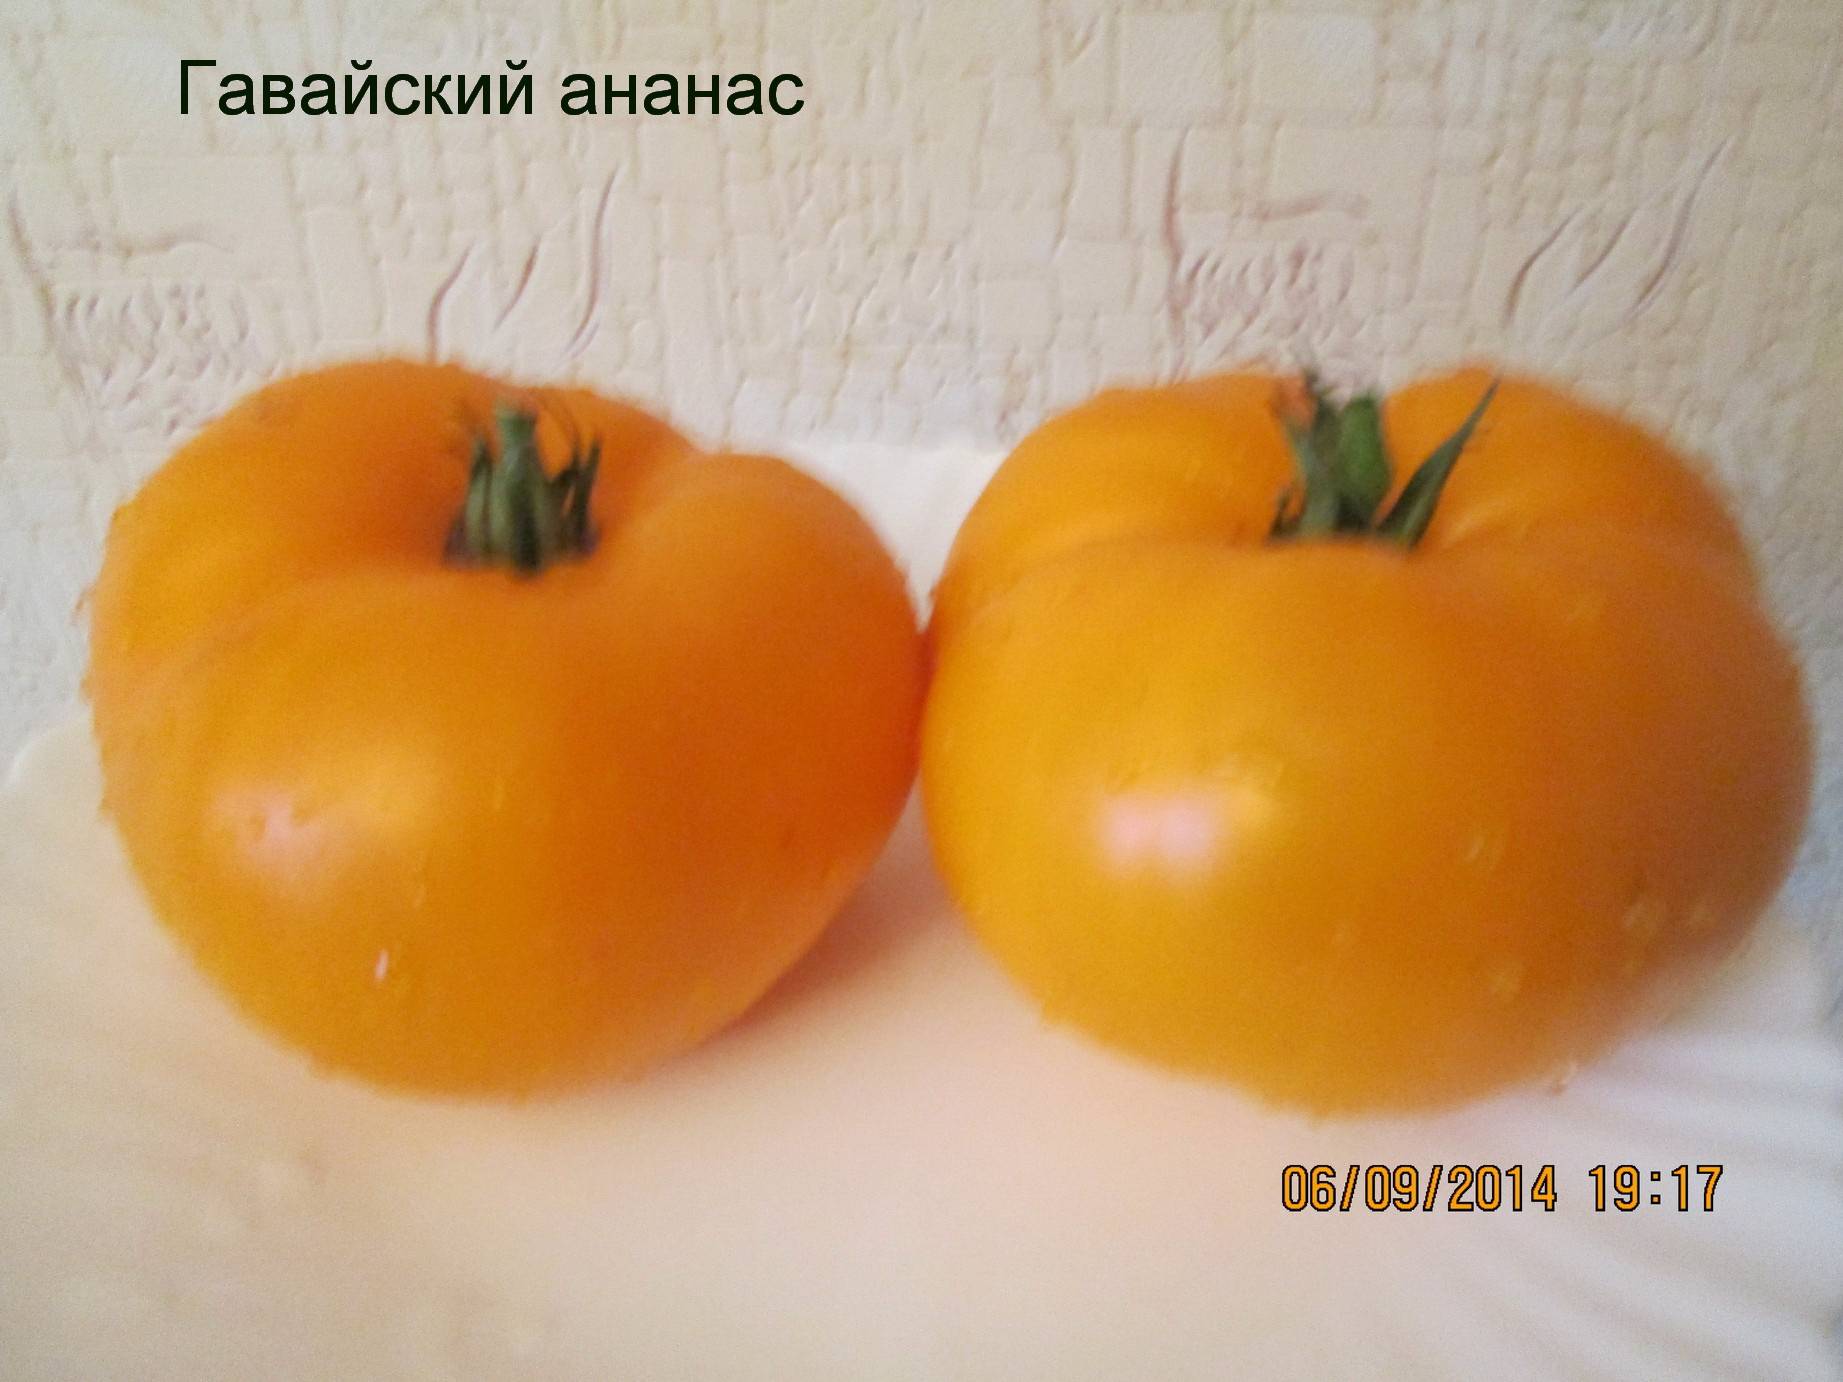 ✅ томат ананас гавайский — описание сорта, отзывы, урожайность - cvetochki-penza.ru